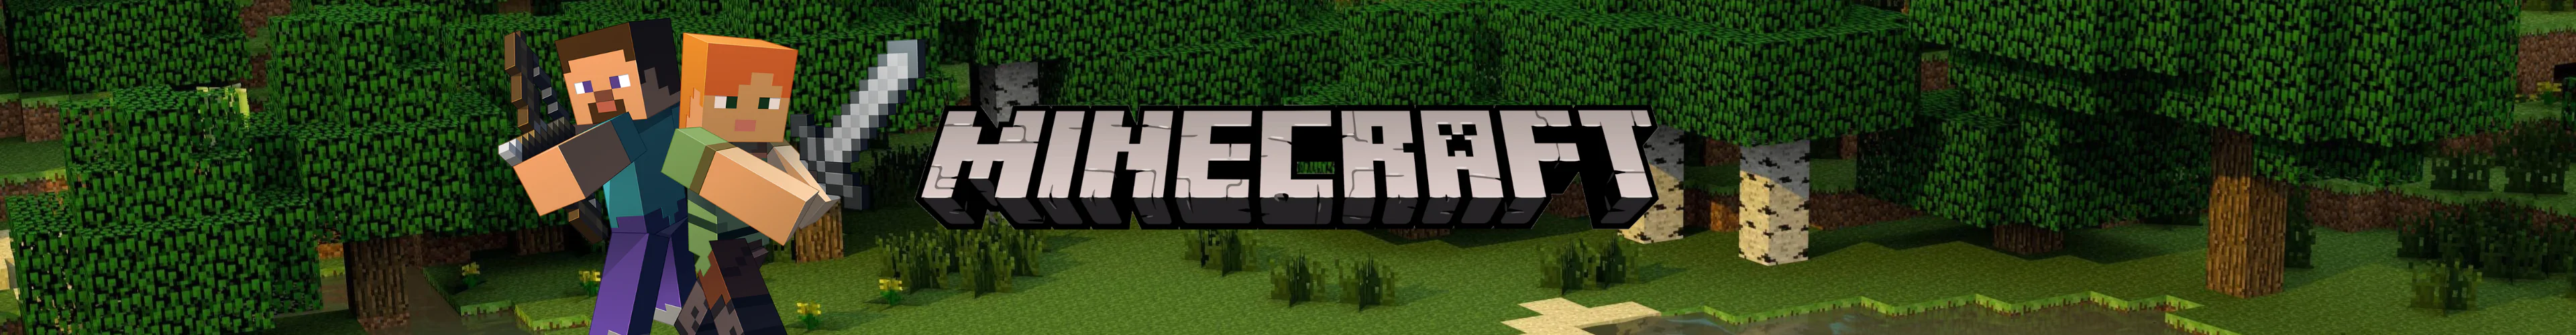 Minecraft games banner